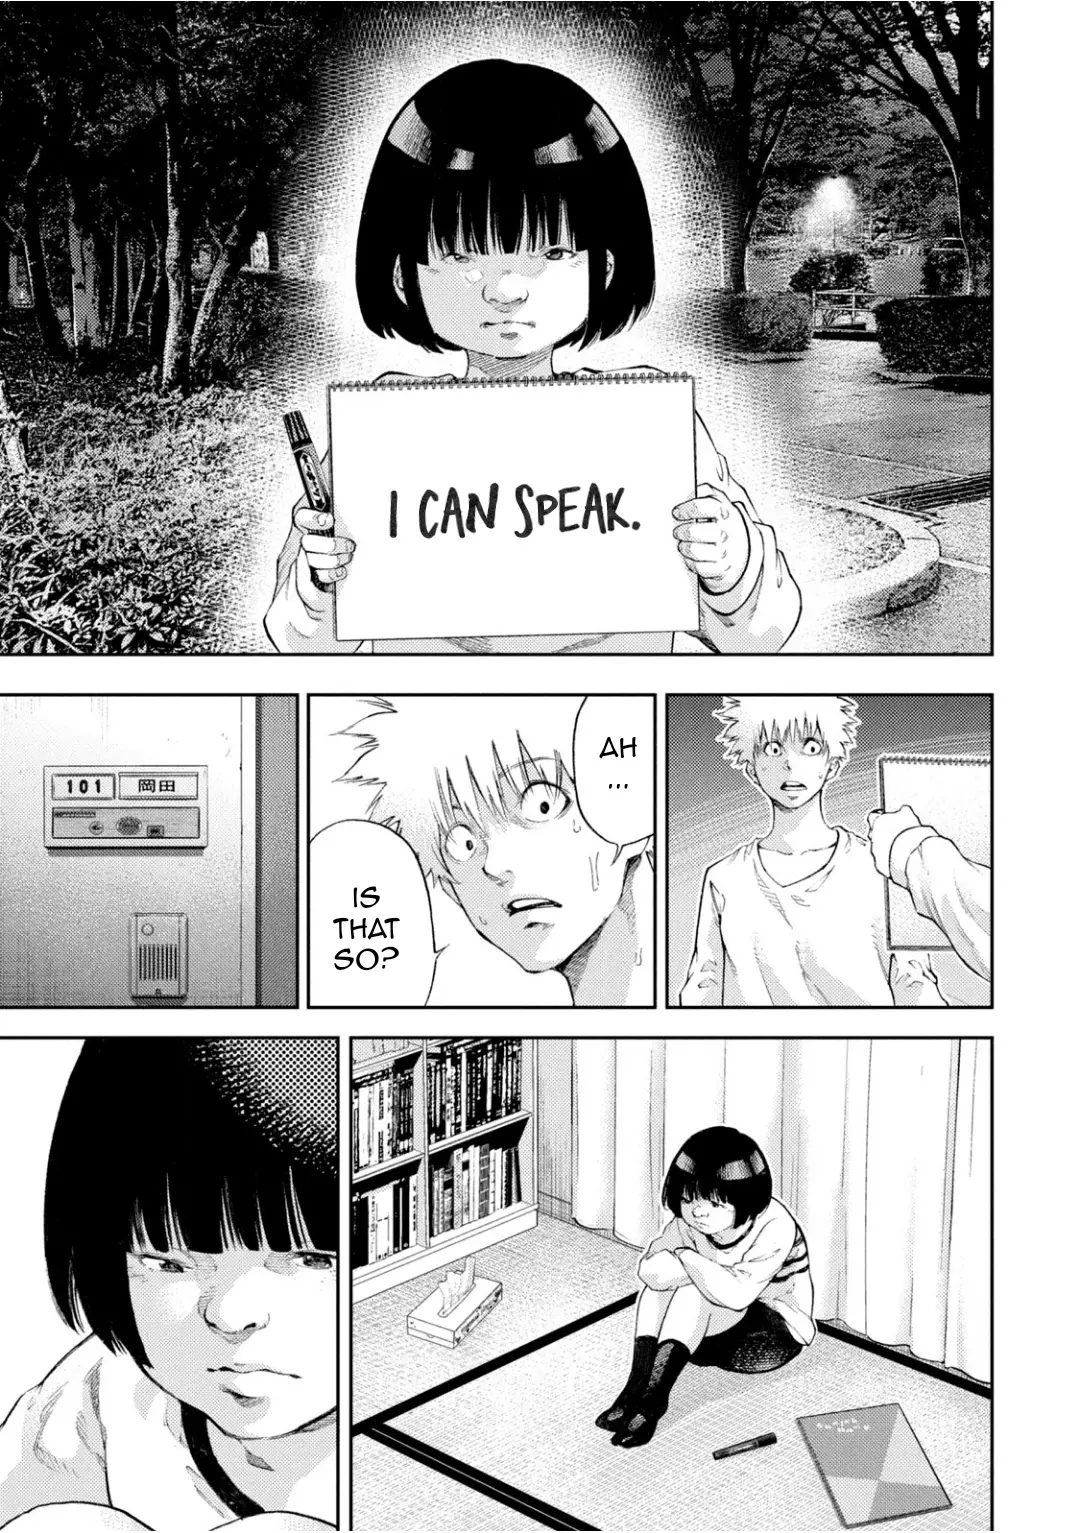 I Love You, Kyouko-San. - 8 page 16-9e8ee7d6